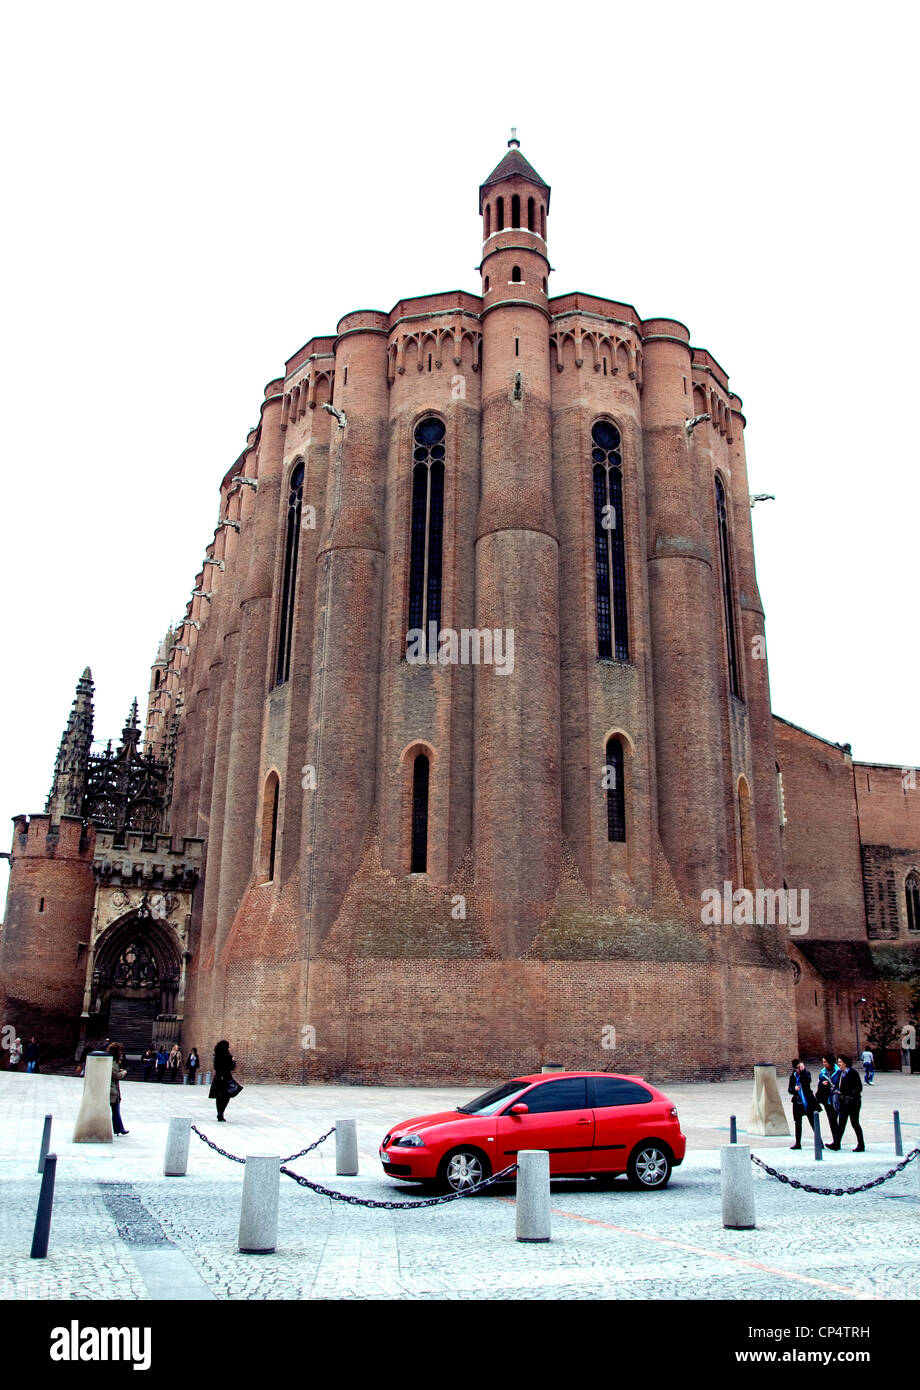 Medieval en Albi (Francia), un pequeño coche rojo detrás de la ciudad inmensa catedral de ladrillo proporciona contraste cautivador Foto de stock